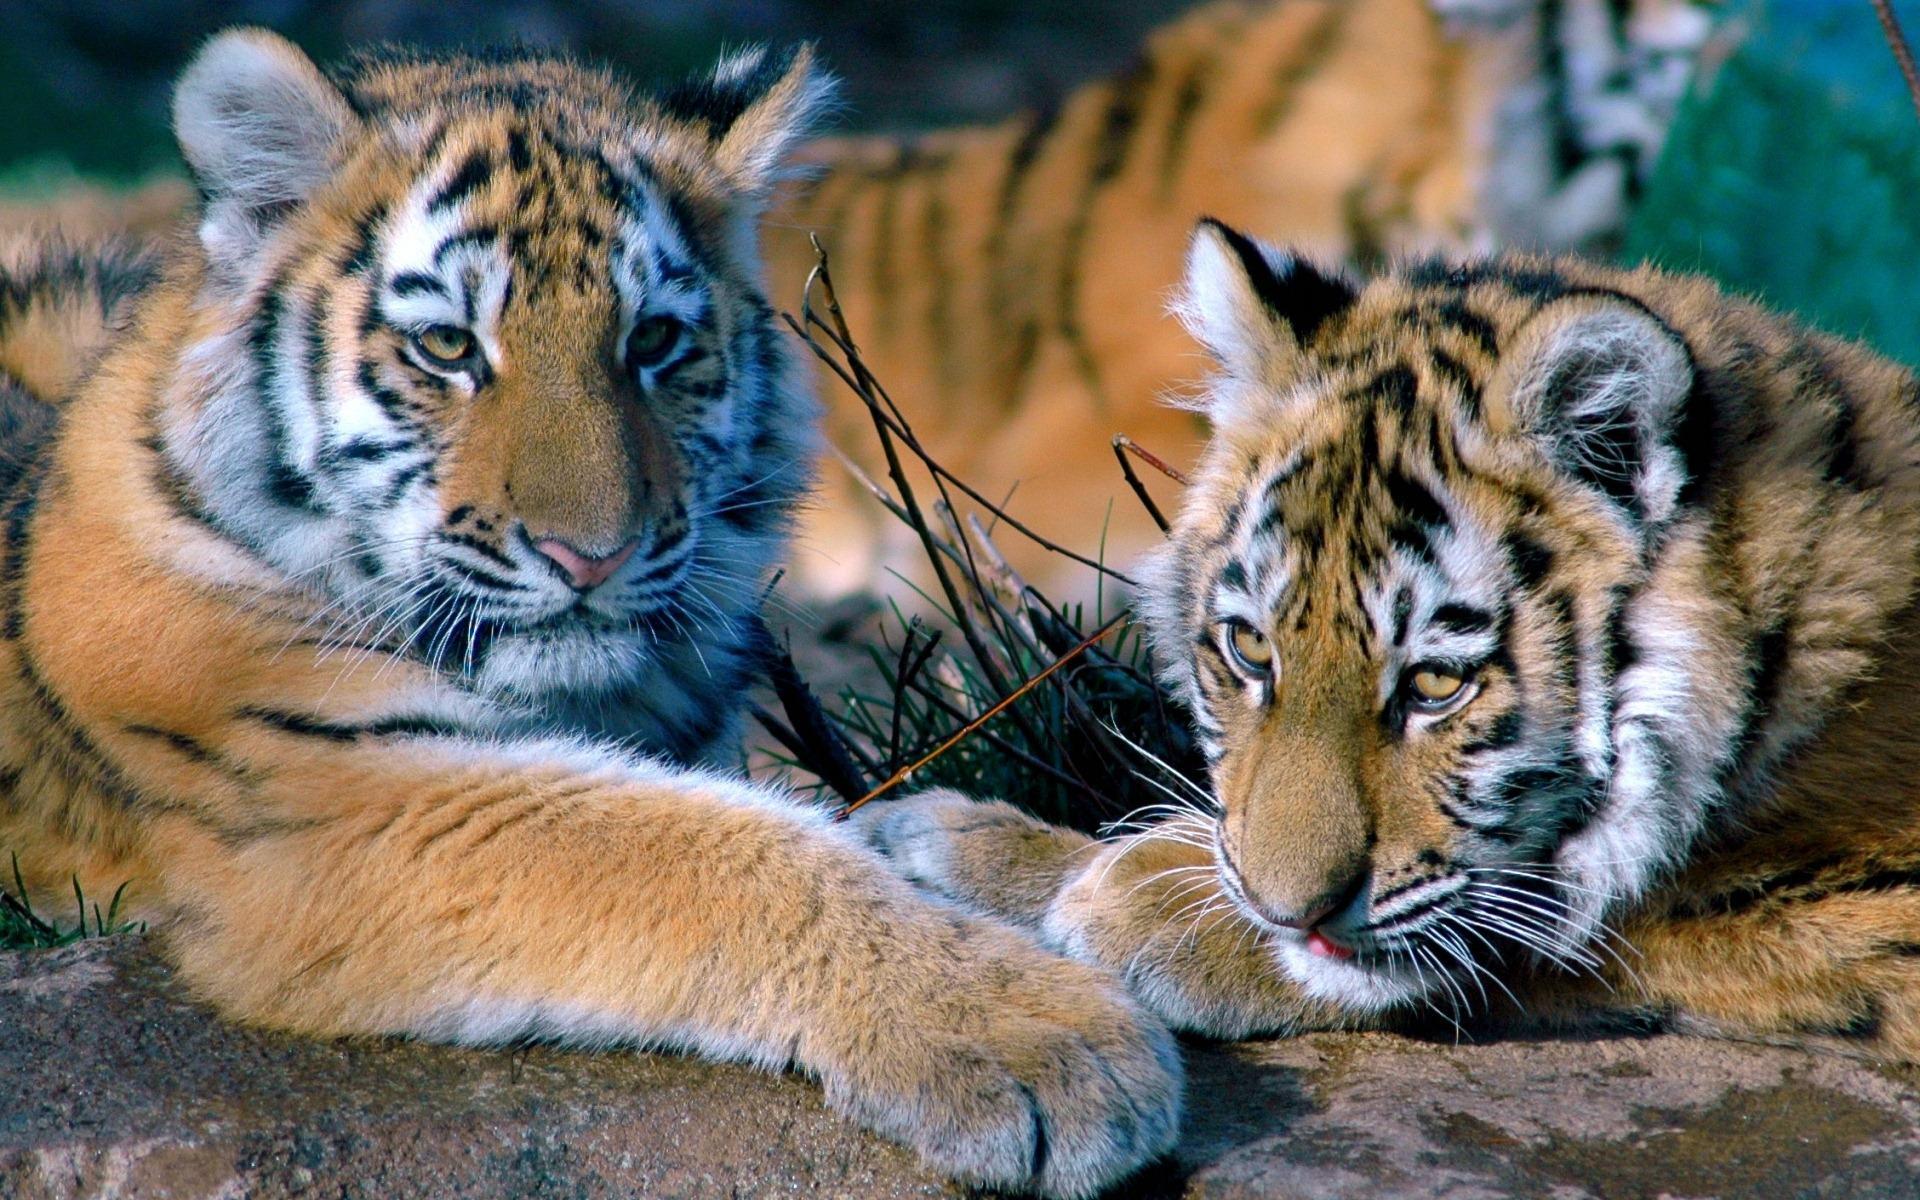 Tiger Cubs Relaxing HD desktop wallpaper, Widescreen, High